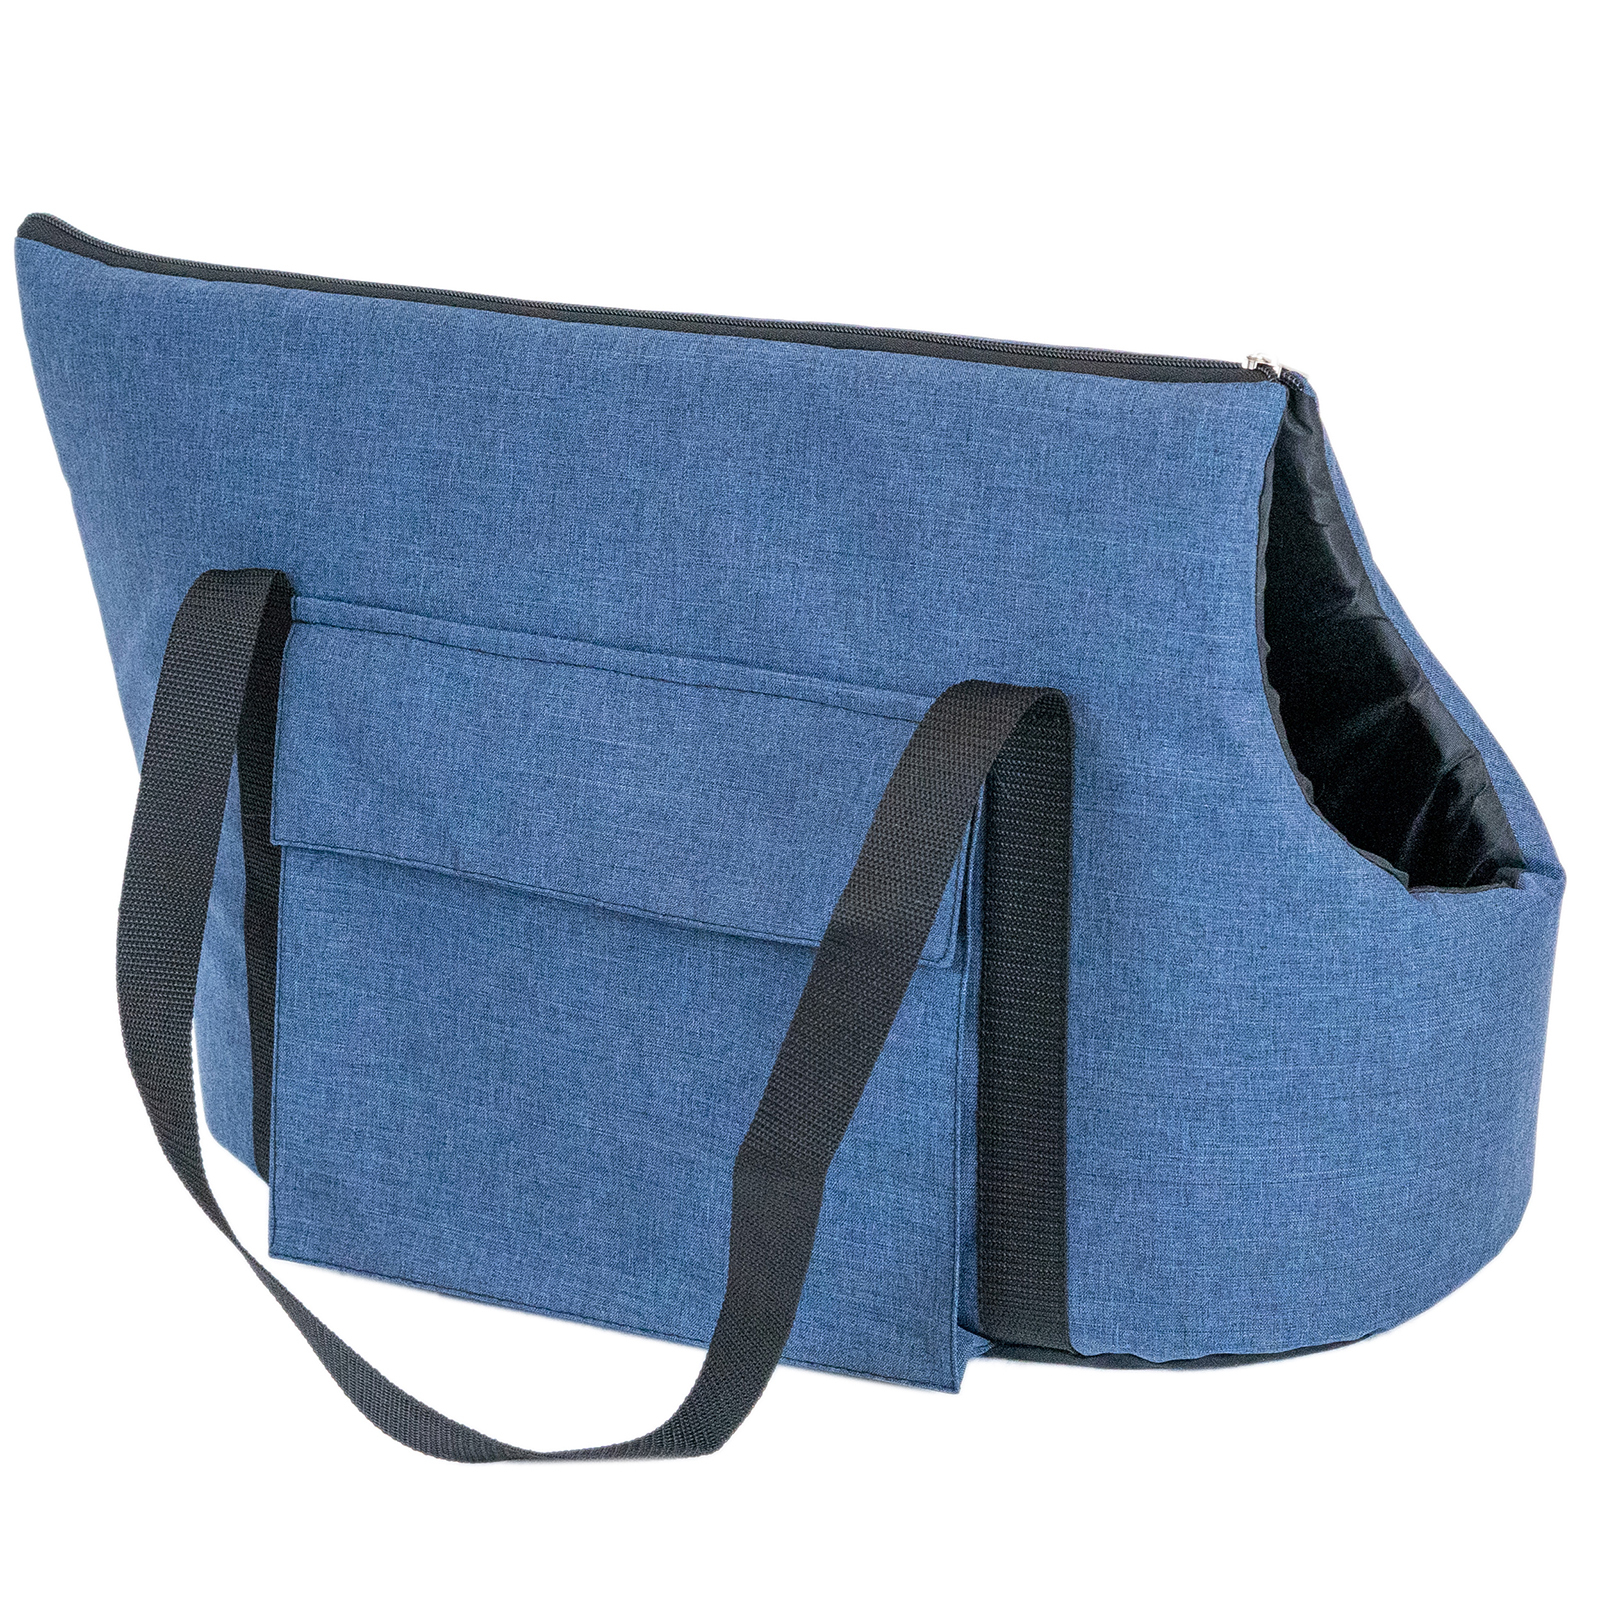 Переноска сумка Блюз PetTails №4 с 2мя карманами 58 х 27 х 34см (катионик,поролон), синяя